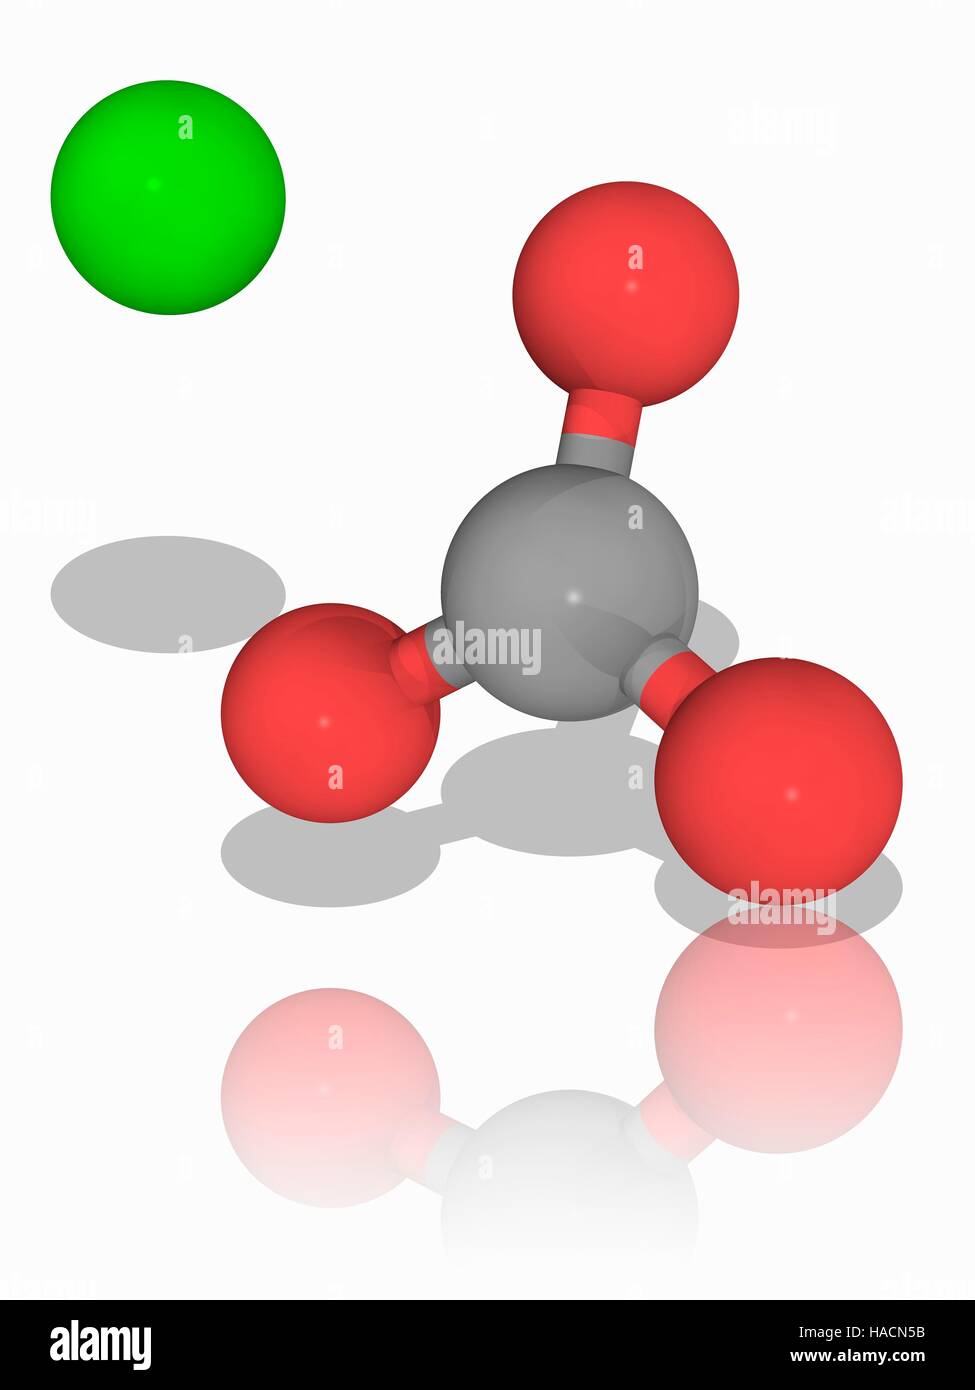 Calciumcarbonat. Molekulares Modell des Ionischen Mineralien Calcium Carbonat (Ca.CO3). Diese Chemikalie bildet die Hauptkomponente von den Schalen von Meerestieren und Eierschalen und ist eine reiche Lagerstätte, die unter Urmeeres gebildet. Atome und Ionen als Kugeln dargestellt werden und sind farblich gekennzeichnet: Kalzium (grün), Kohlenstoff (grau) und Sauerstoff (rot). Die Kalzium-Ionen und Carbonat-Ionen haben eine doppelte positive und negative Ladung. Abbildung. Stockfoto